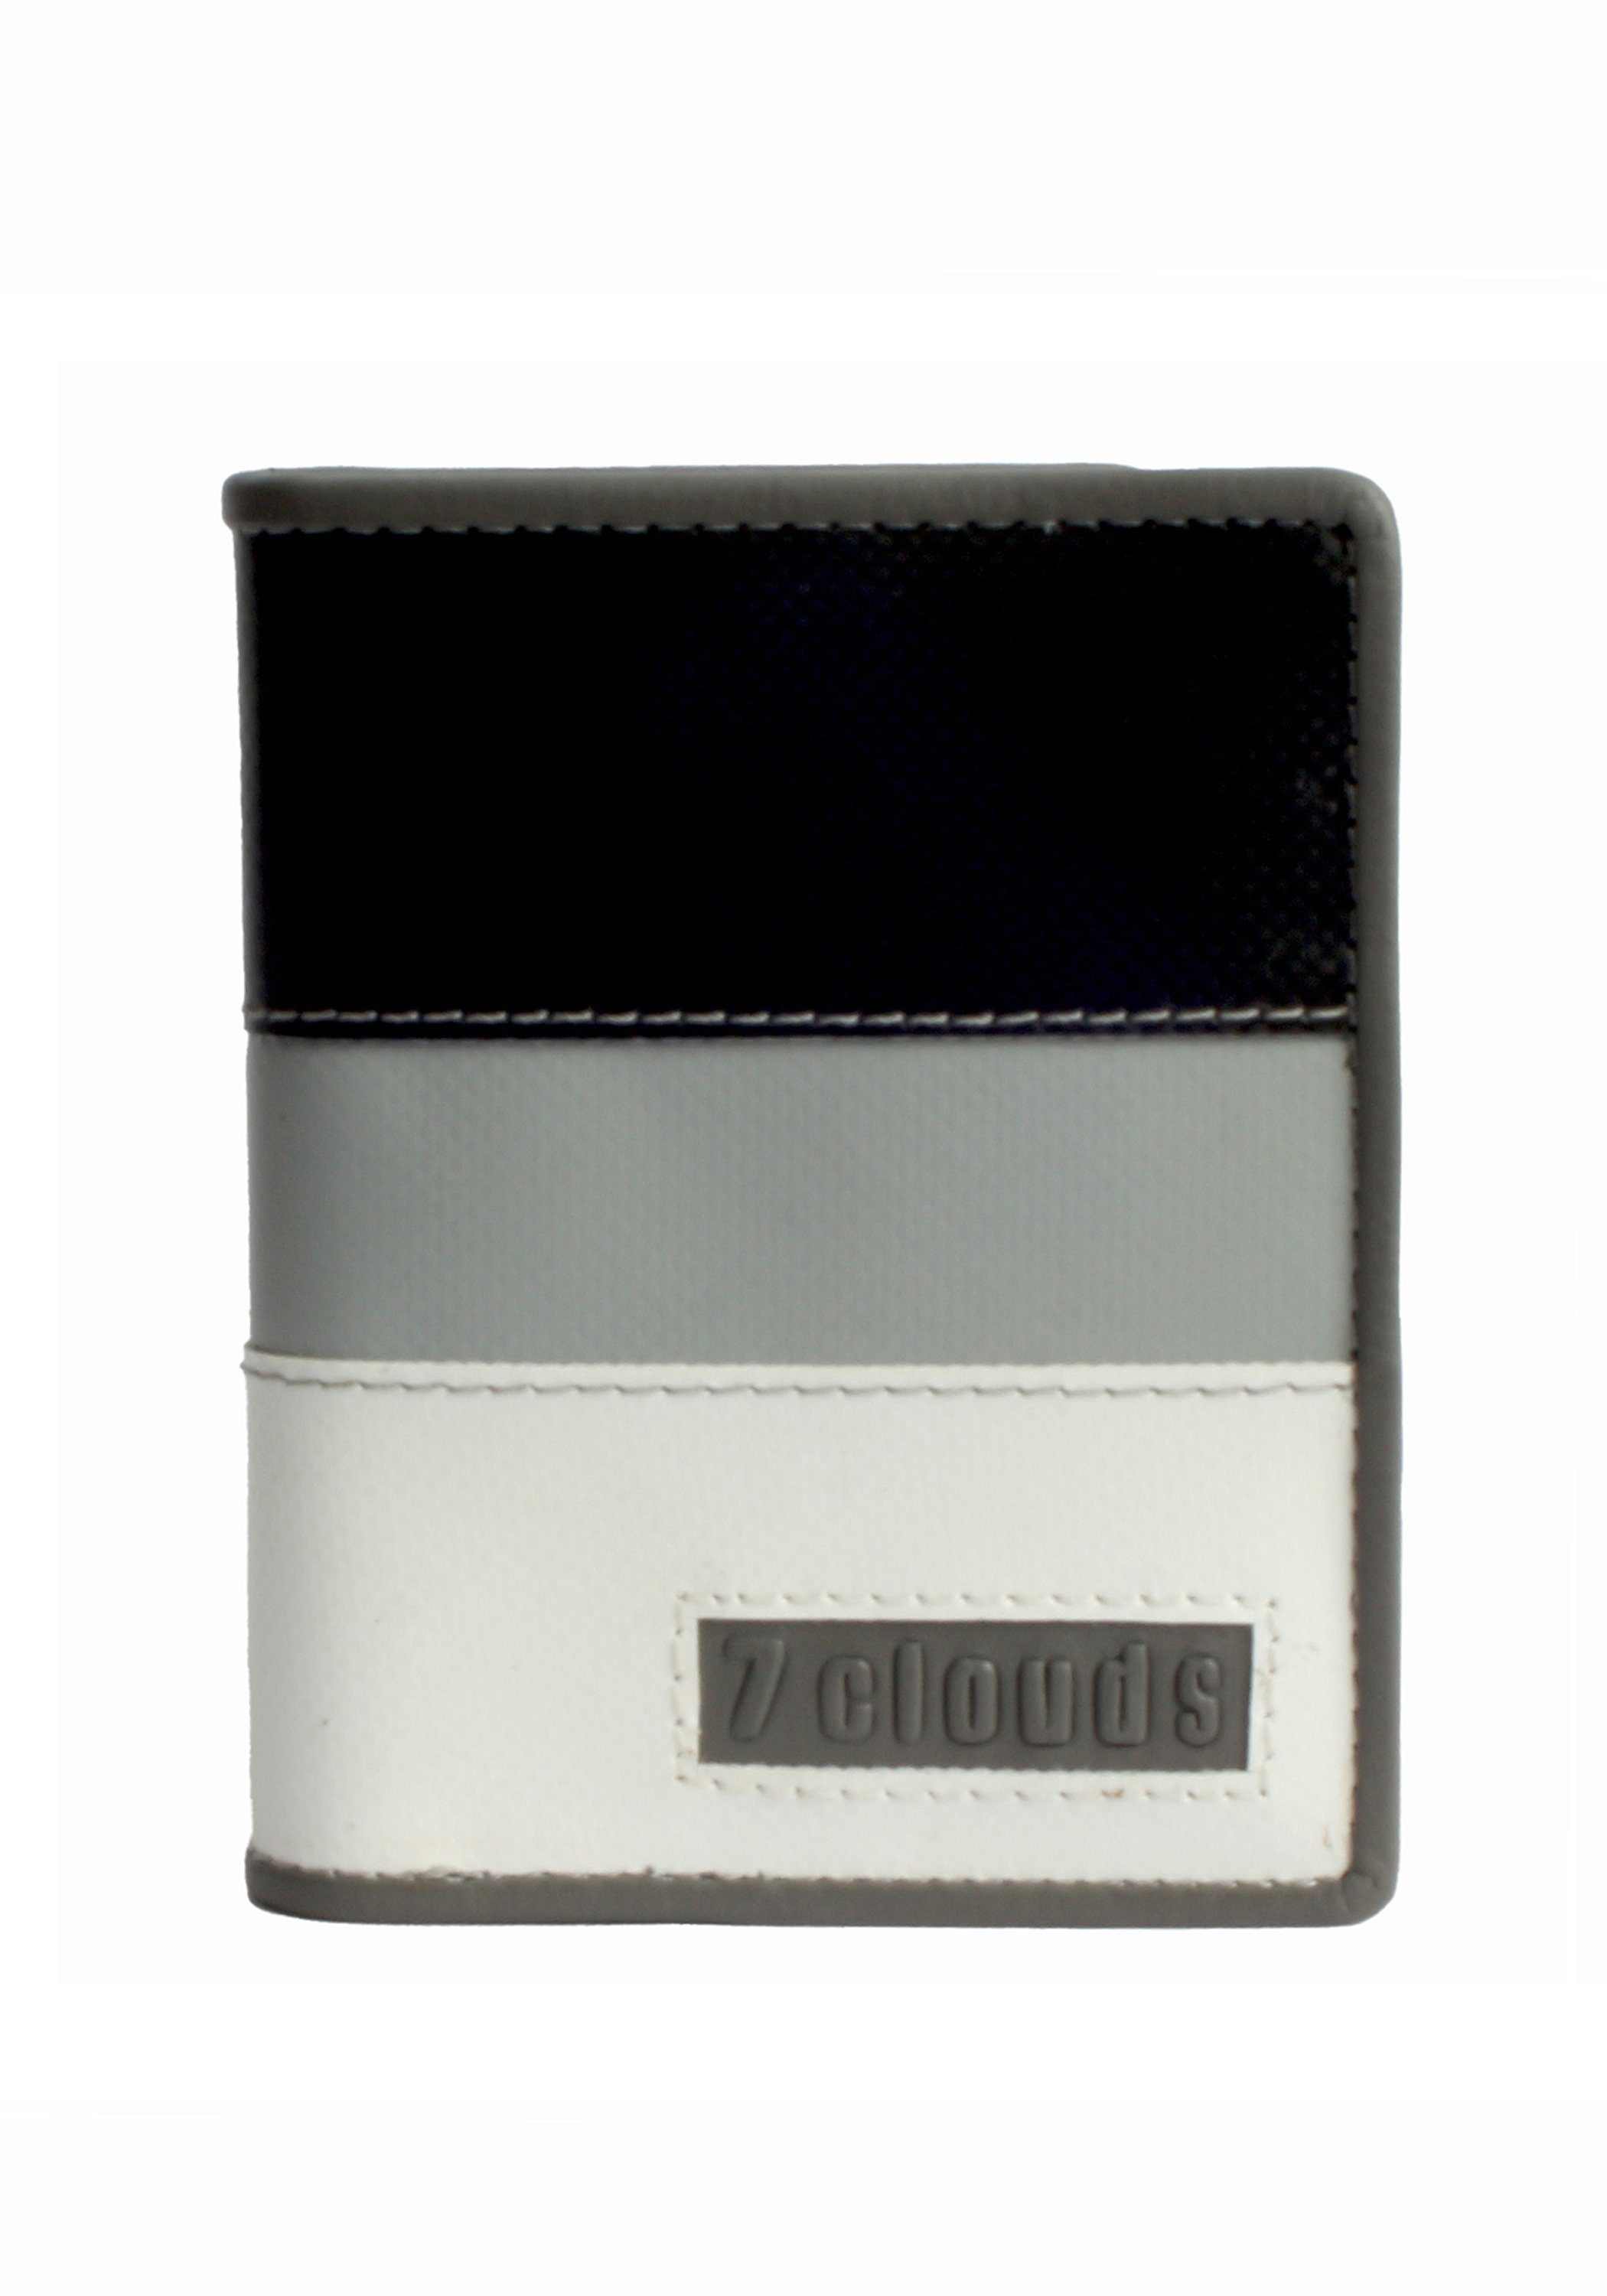 7clouds Geldbörse Keron 7.1, Artikel aus fairer Produktion (amfori BSCI) white-grey-black